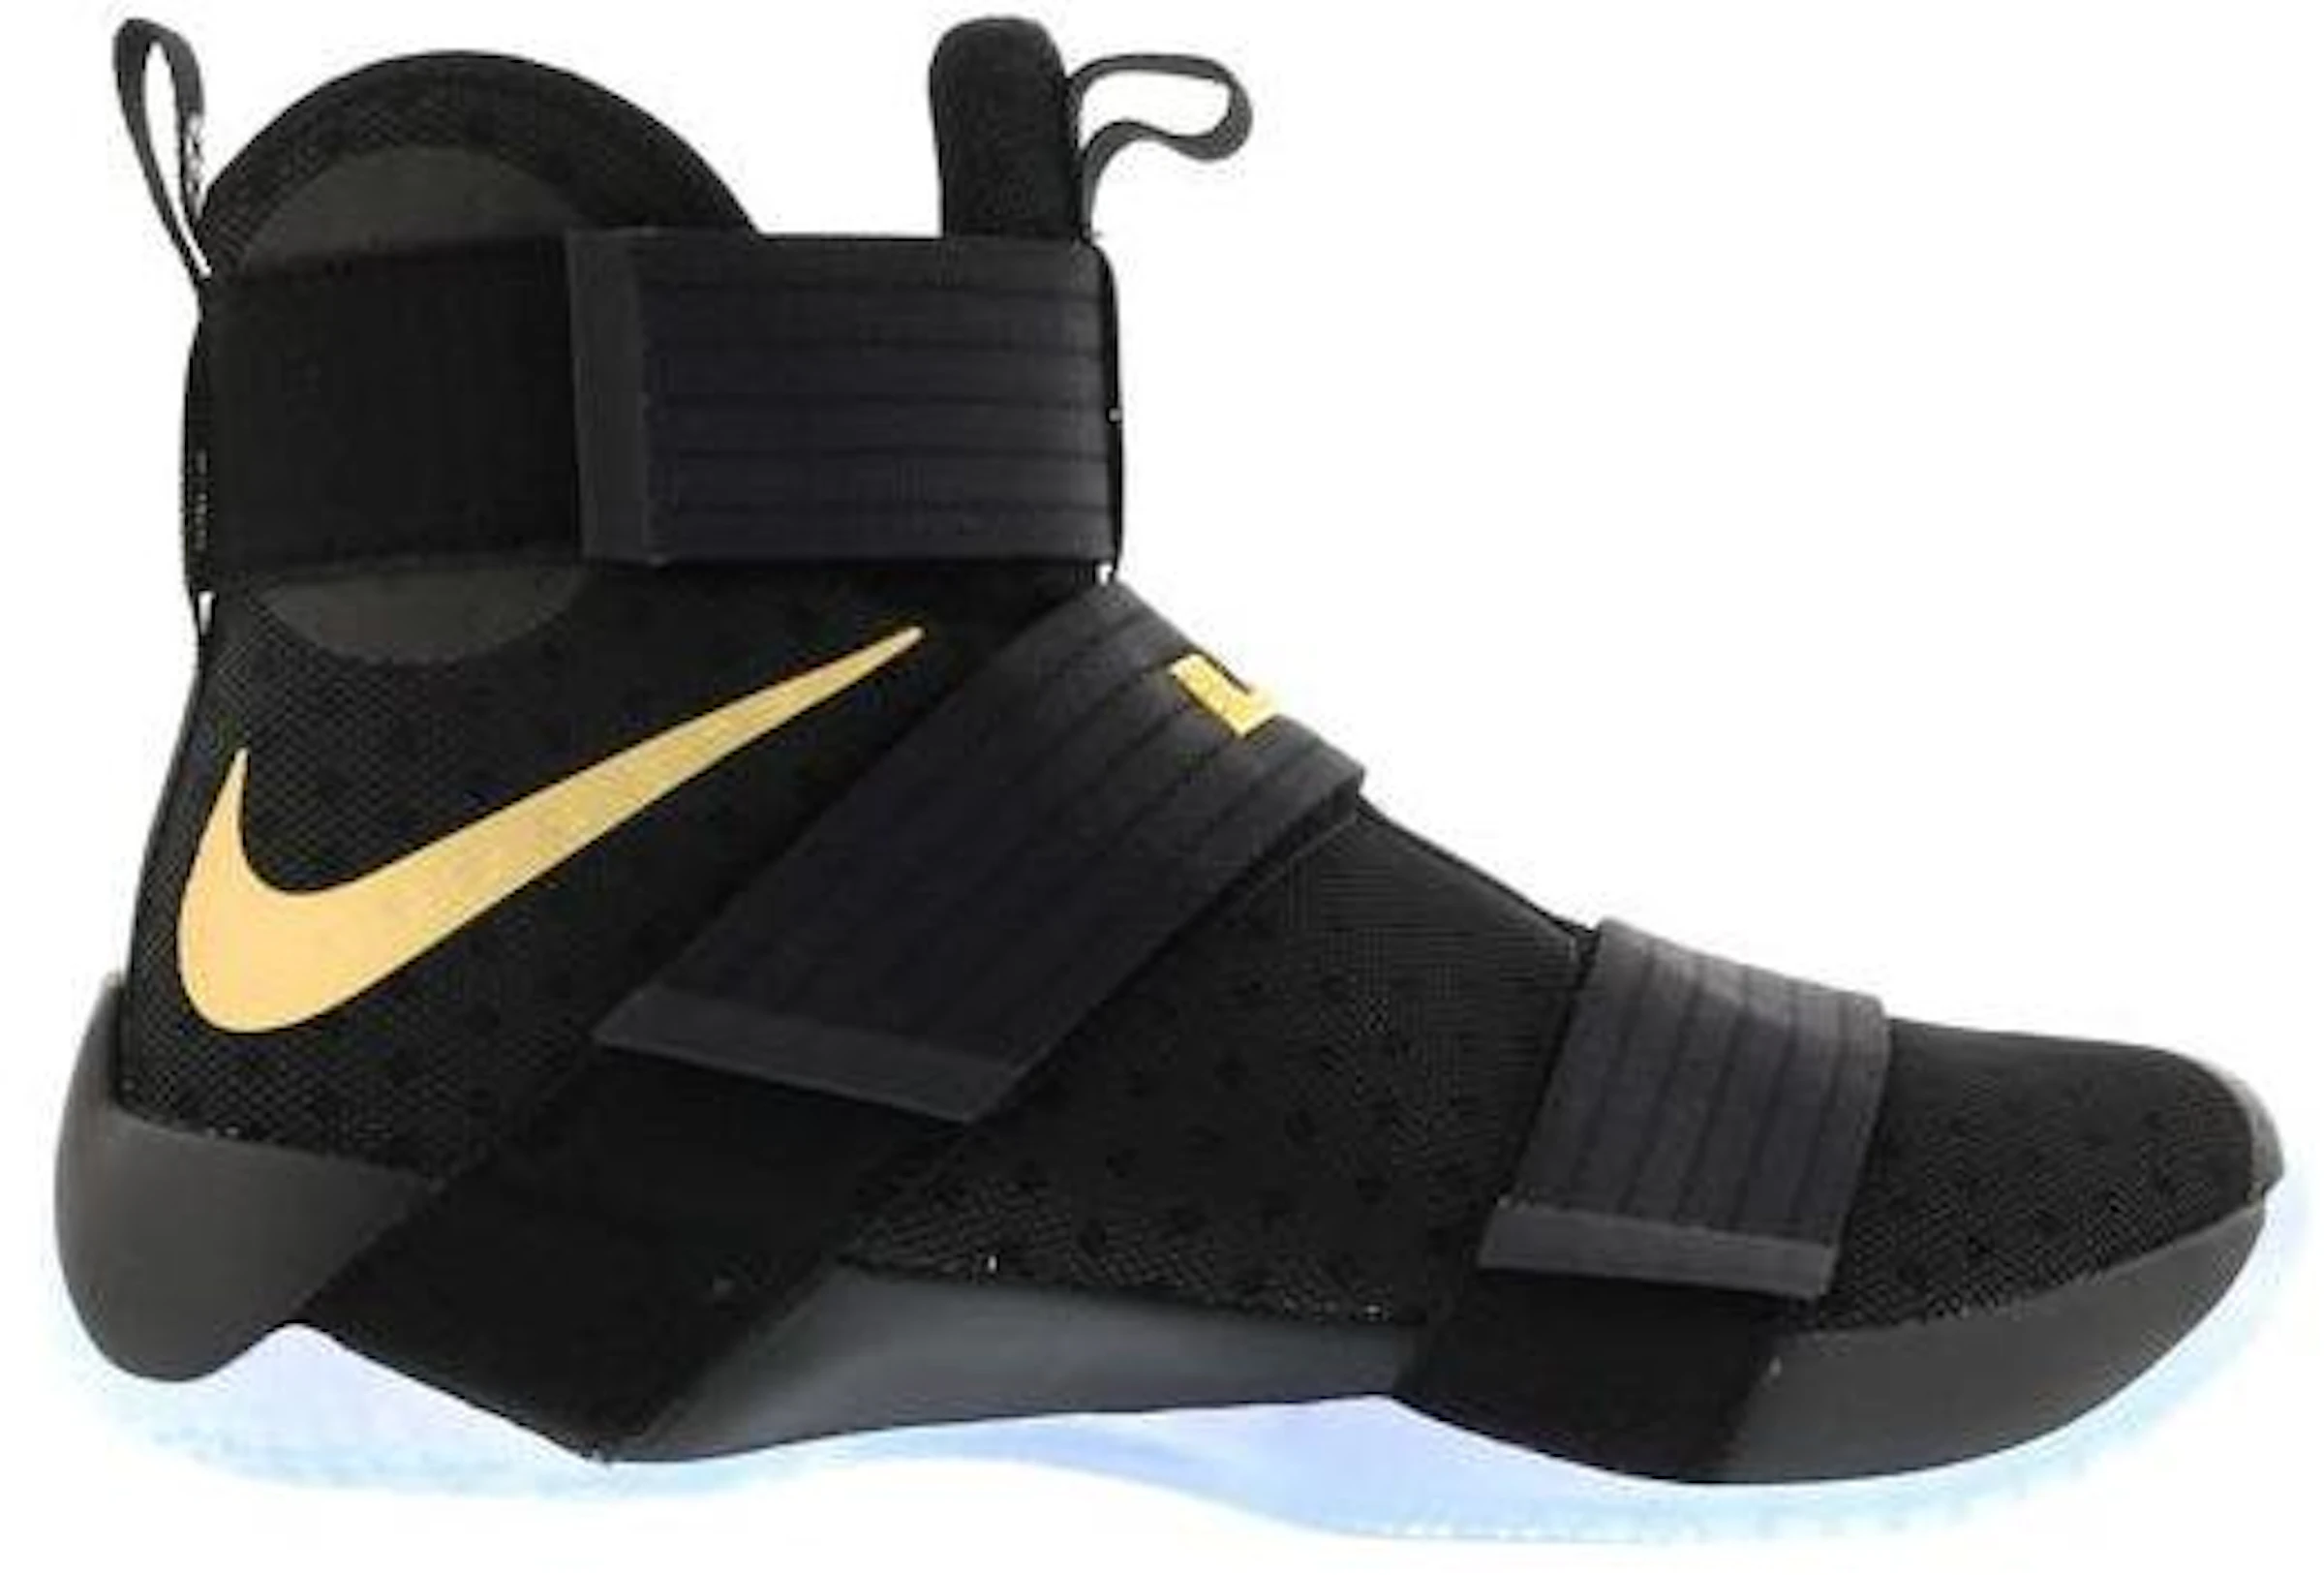 ventilación Dólar dinastía Nike LeBron Zoom Soldier 10 Black Gold (Nike iD) - 885682-991/885682-993 -  ES